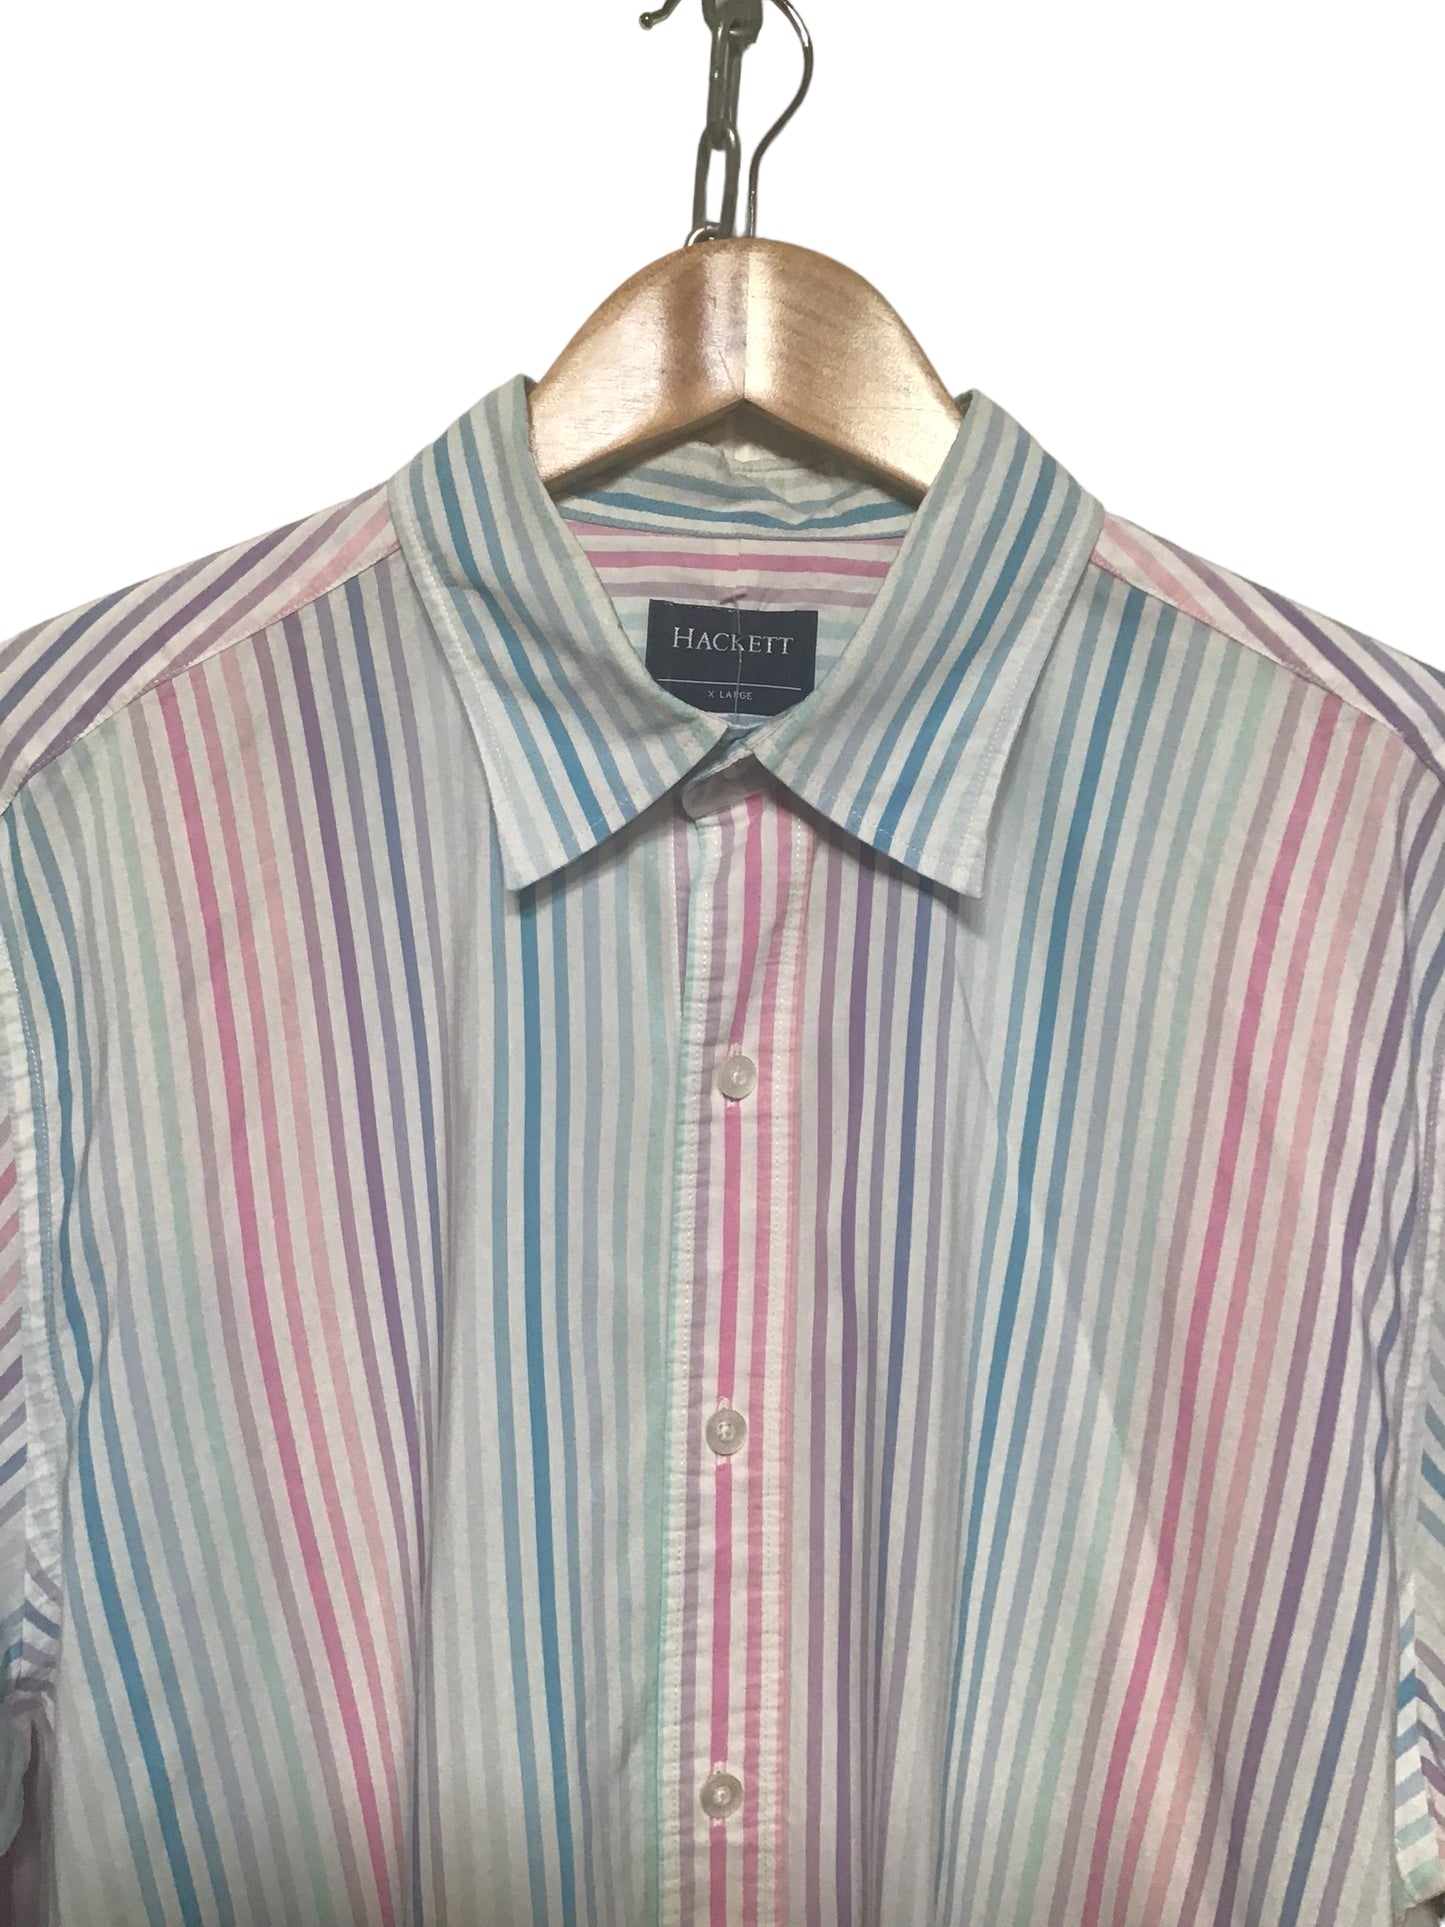 Hackett Shirt (Size XL)